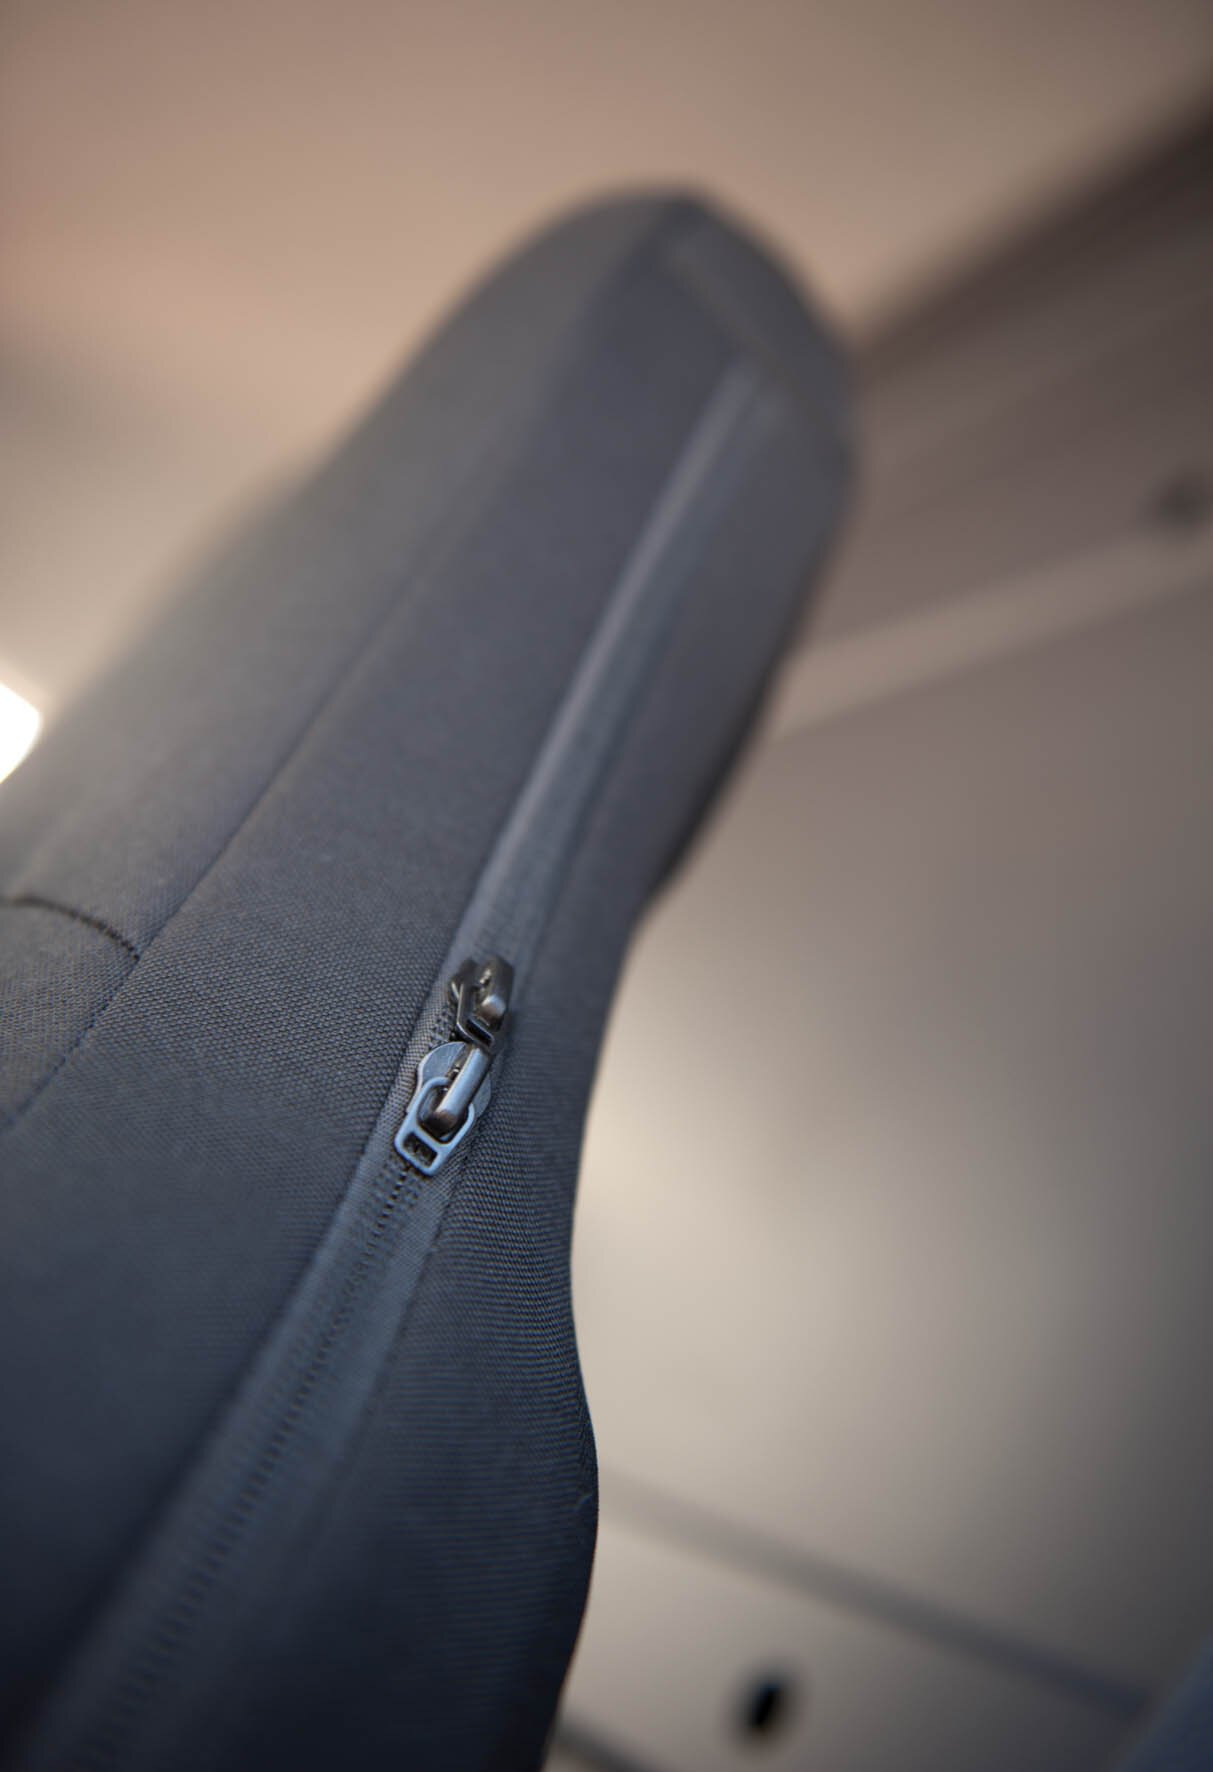 Transporter-Sitzbezug Highback für Einzelsitz vorne mit integrierter Kopfsütze anthrazit